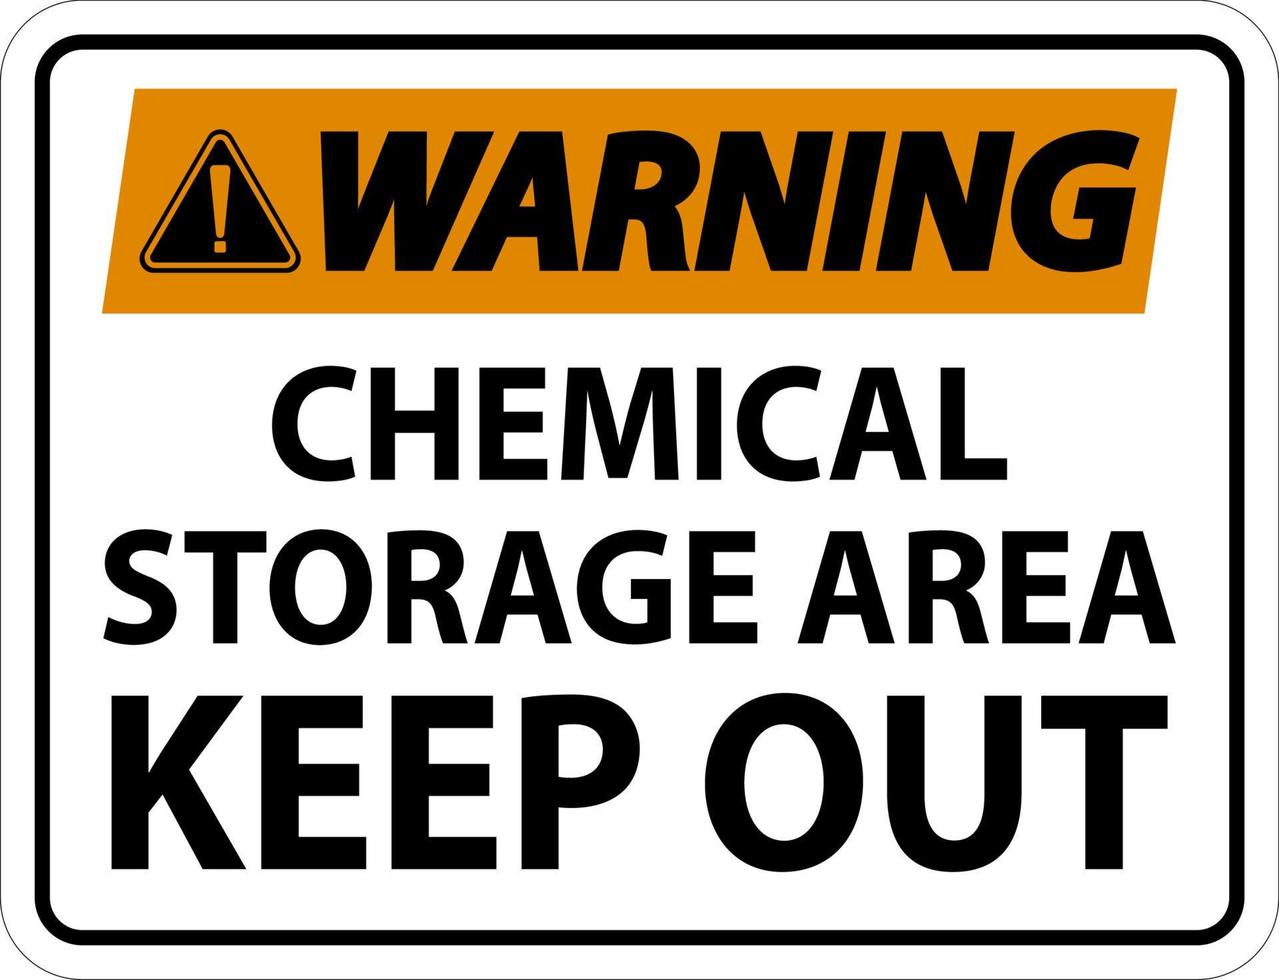 etiqueta de advertência área de armazenamento de produtos químicos mantenha fora o sinal vetor